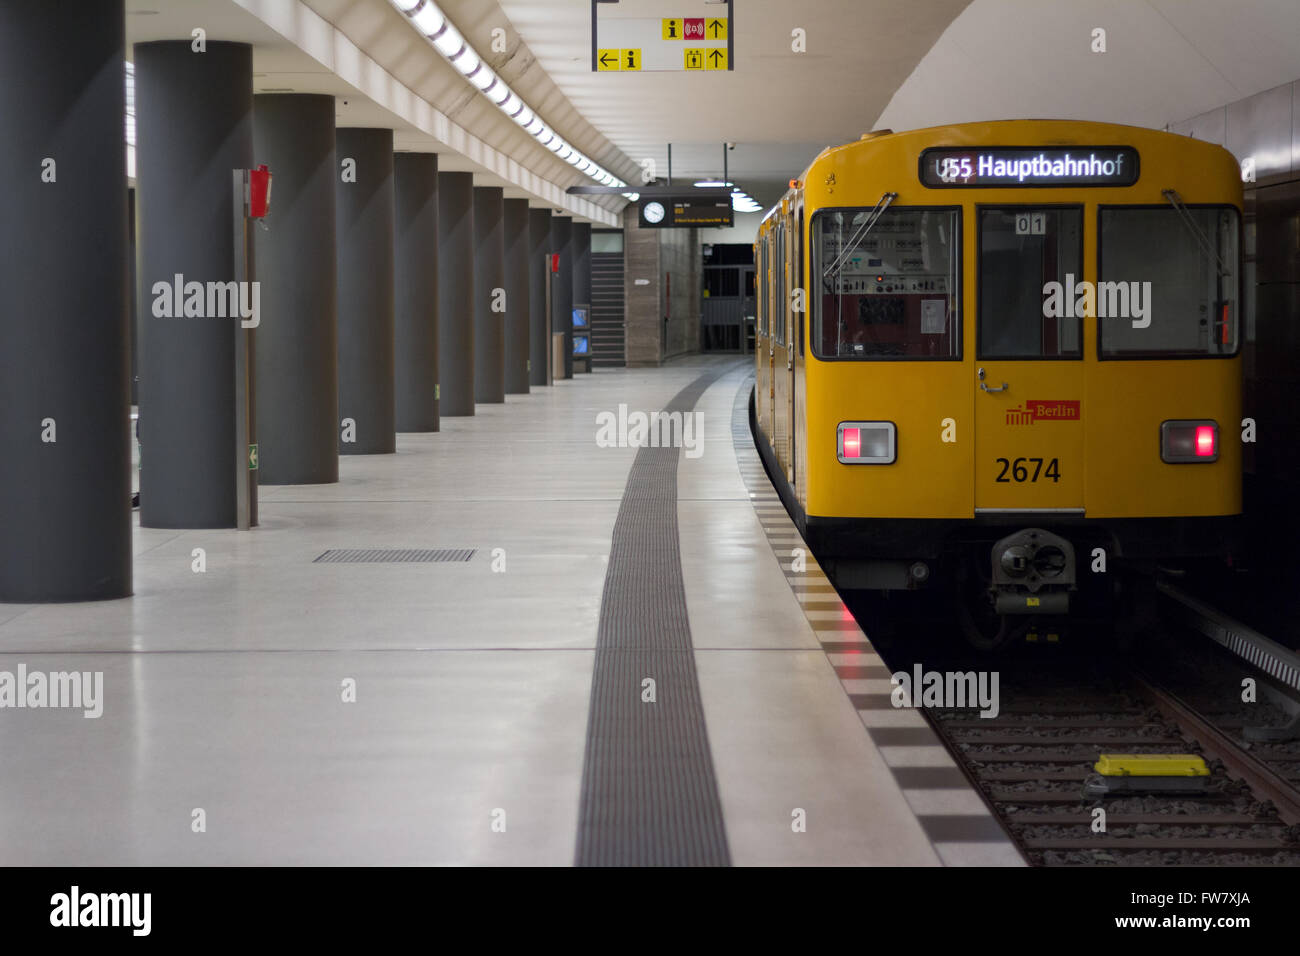 Berlin, Germany - march 30, 2016: Underground train (U-Bahn) at train station Brandenburger Tor (Brandenburg Gate) in Berlin Stock Photo